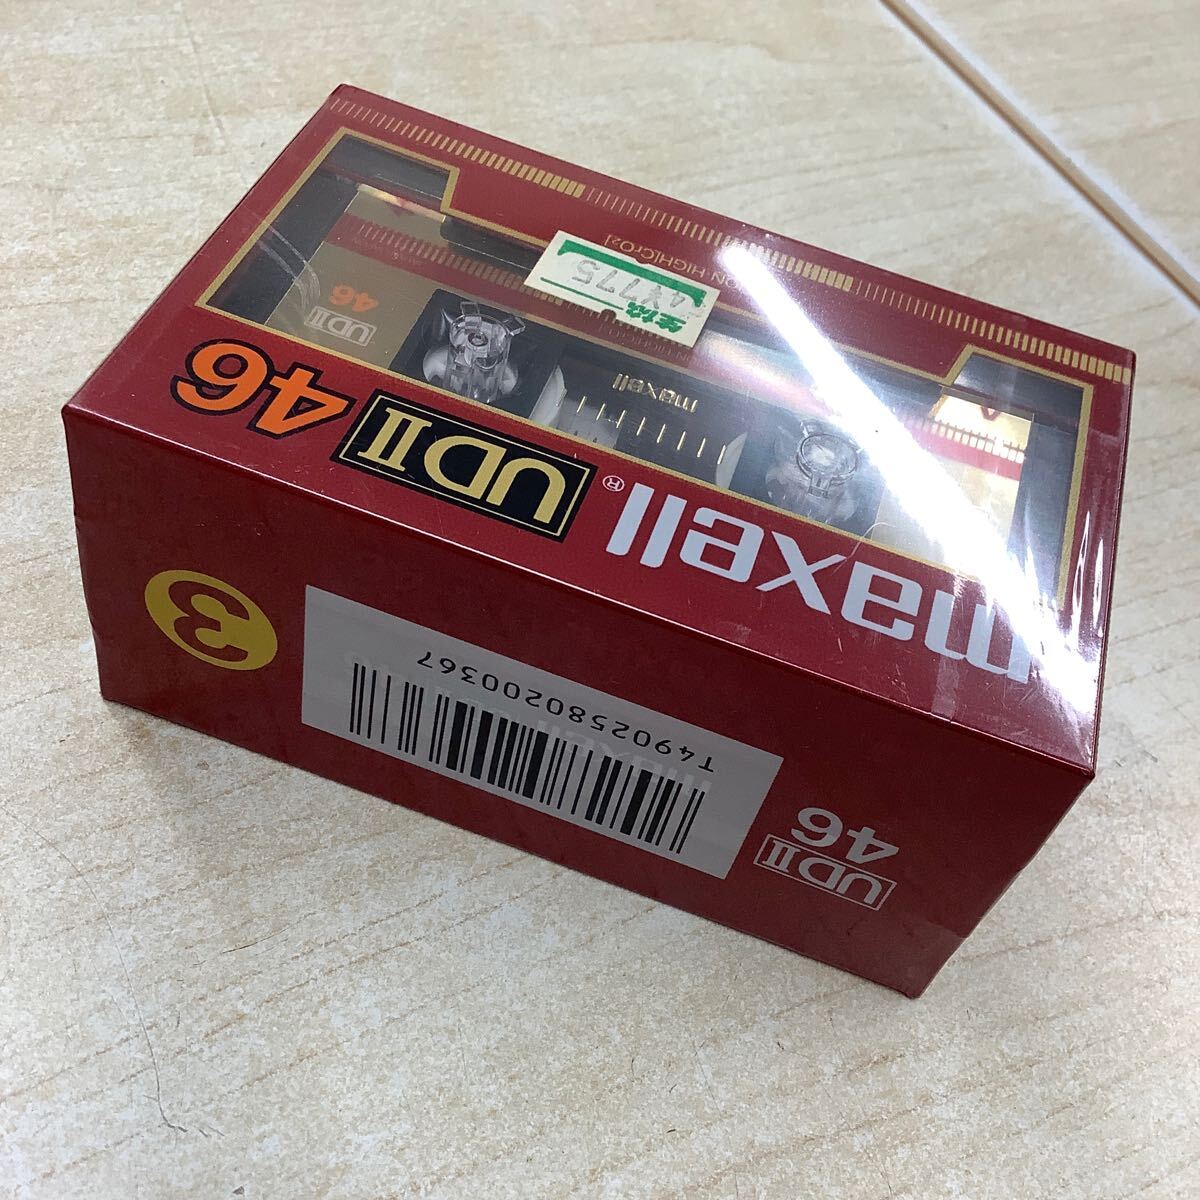 maxell マクセル UDⅡ 46 ハイポジション カセットテープ 3個セット+1本 まとめて 未開封 長期保管品 の画像3